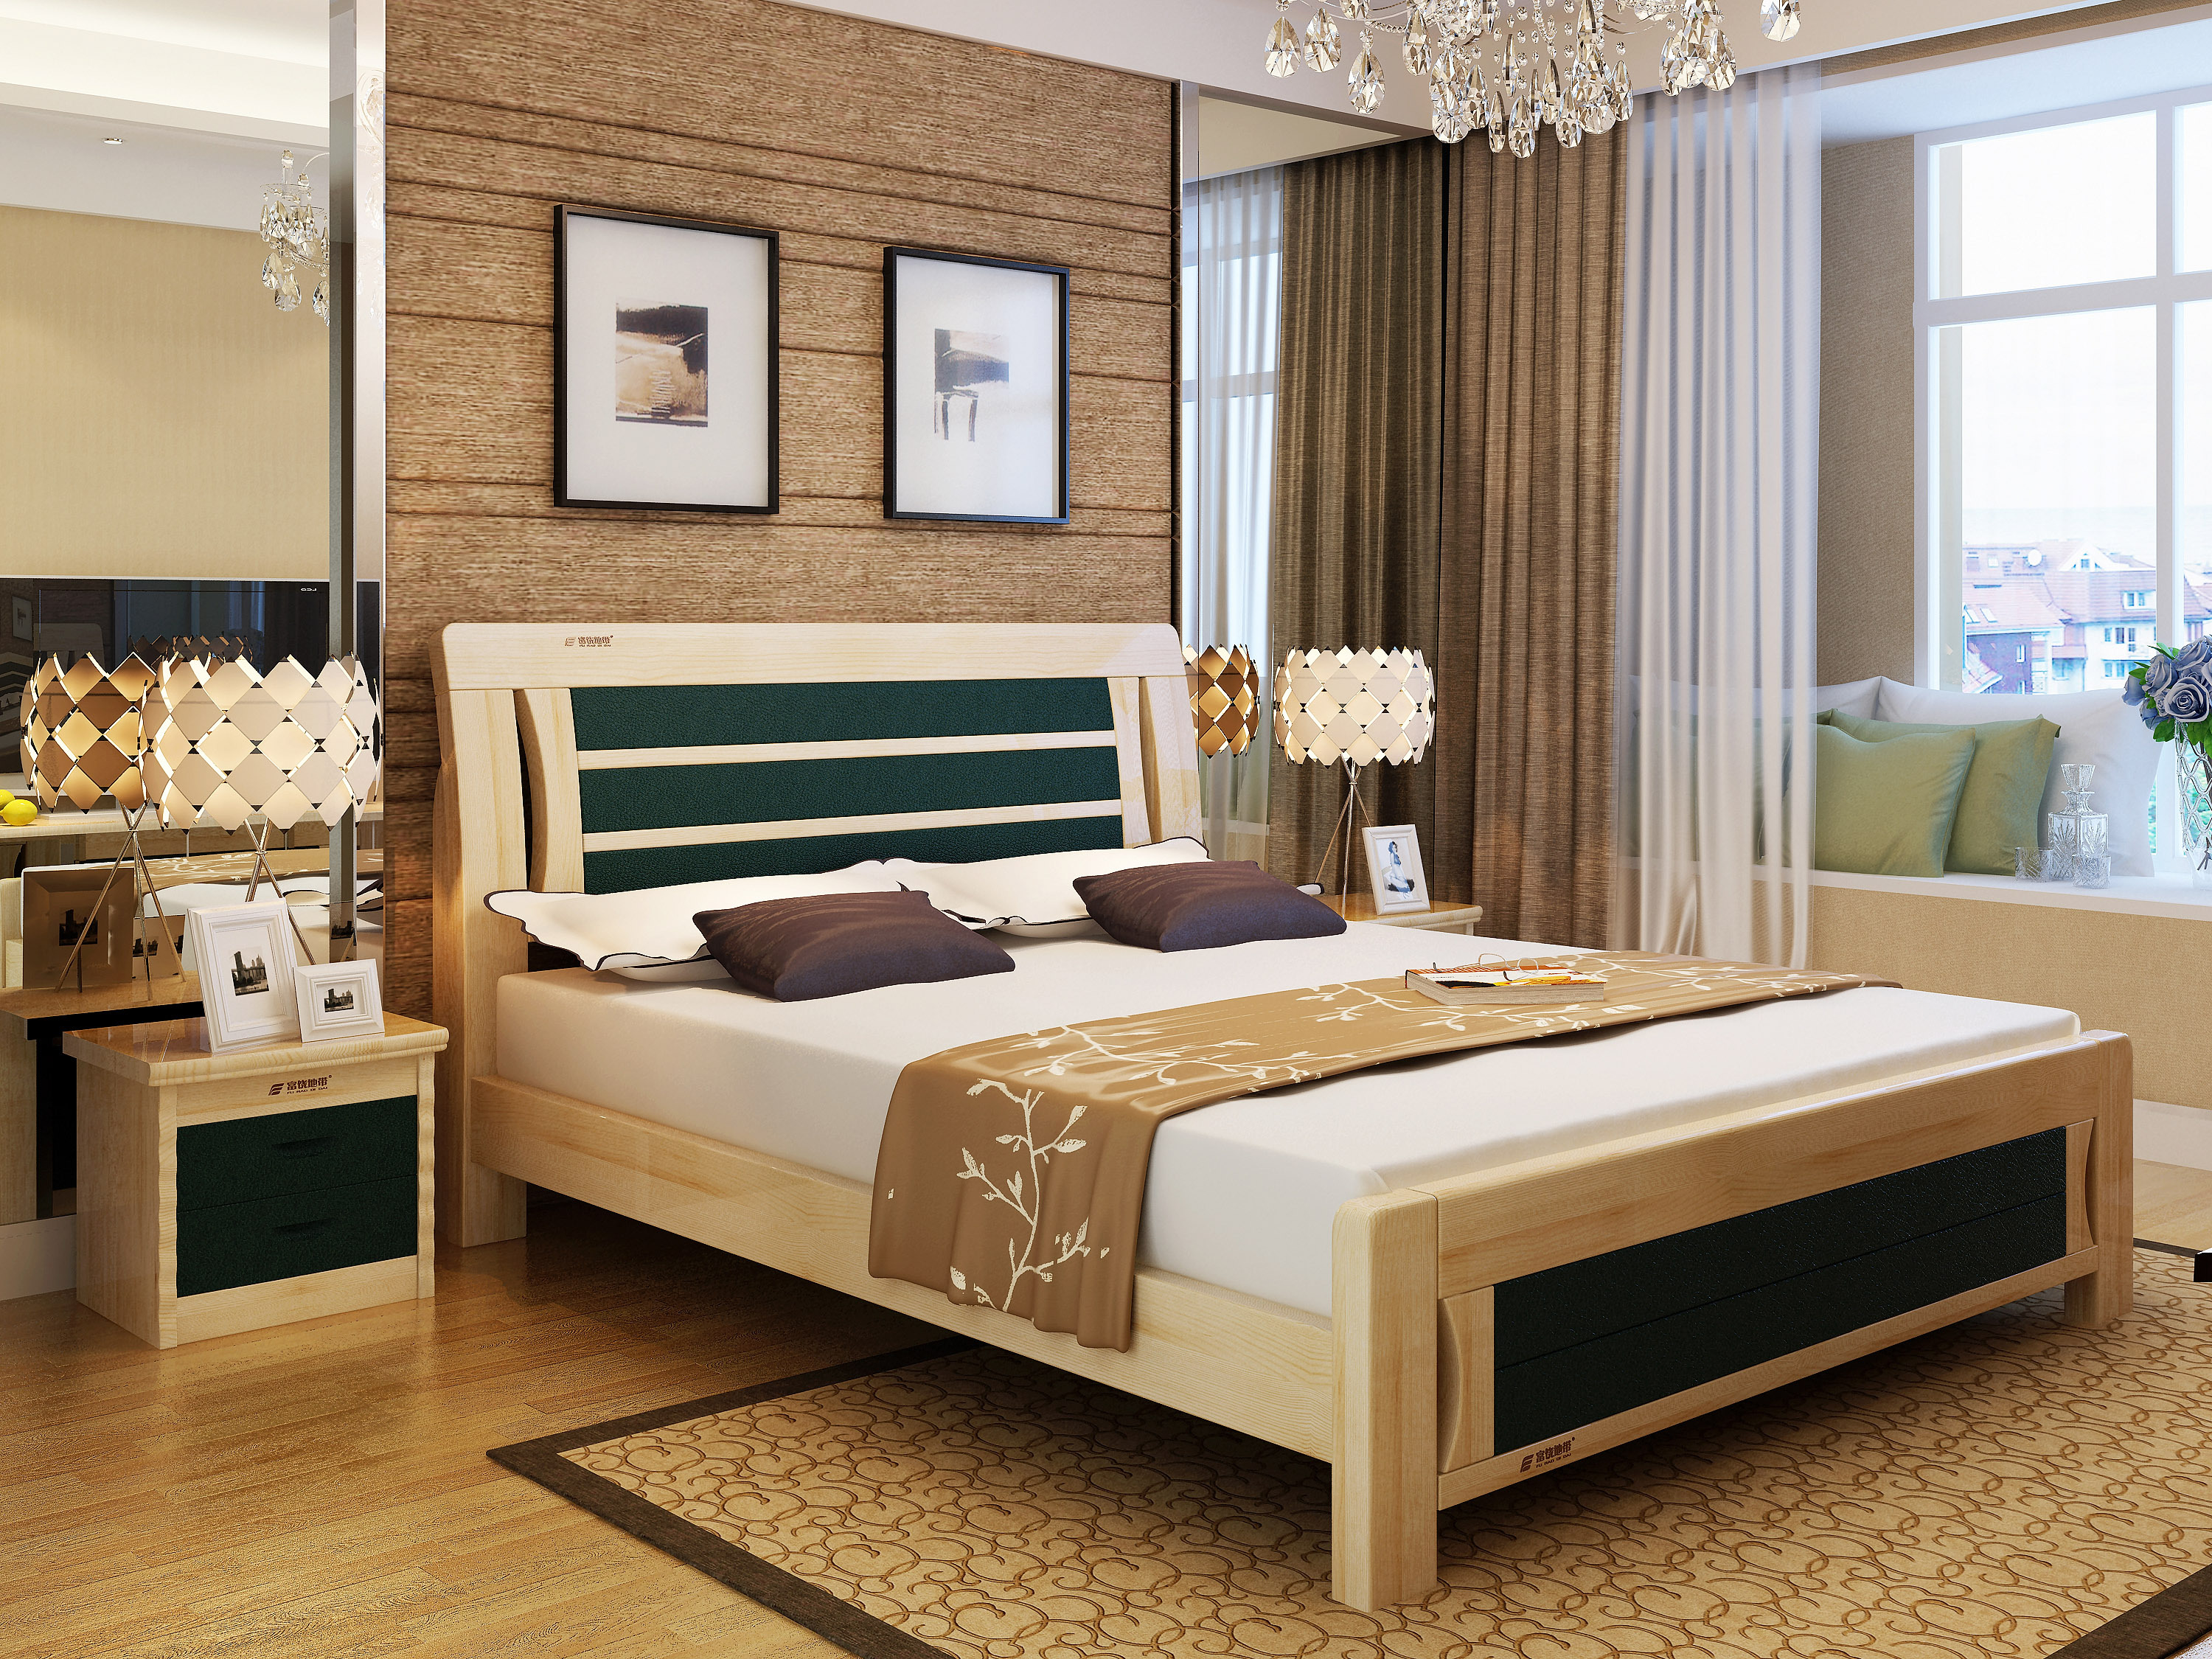 实木床系列,实木床效果图,实木家具3D效果图,淘宝家具3d效果图